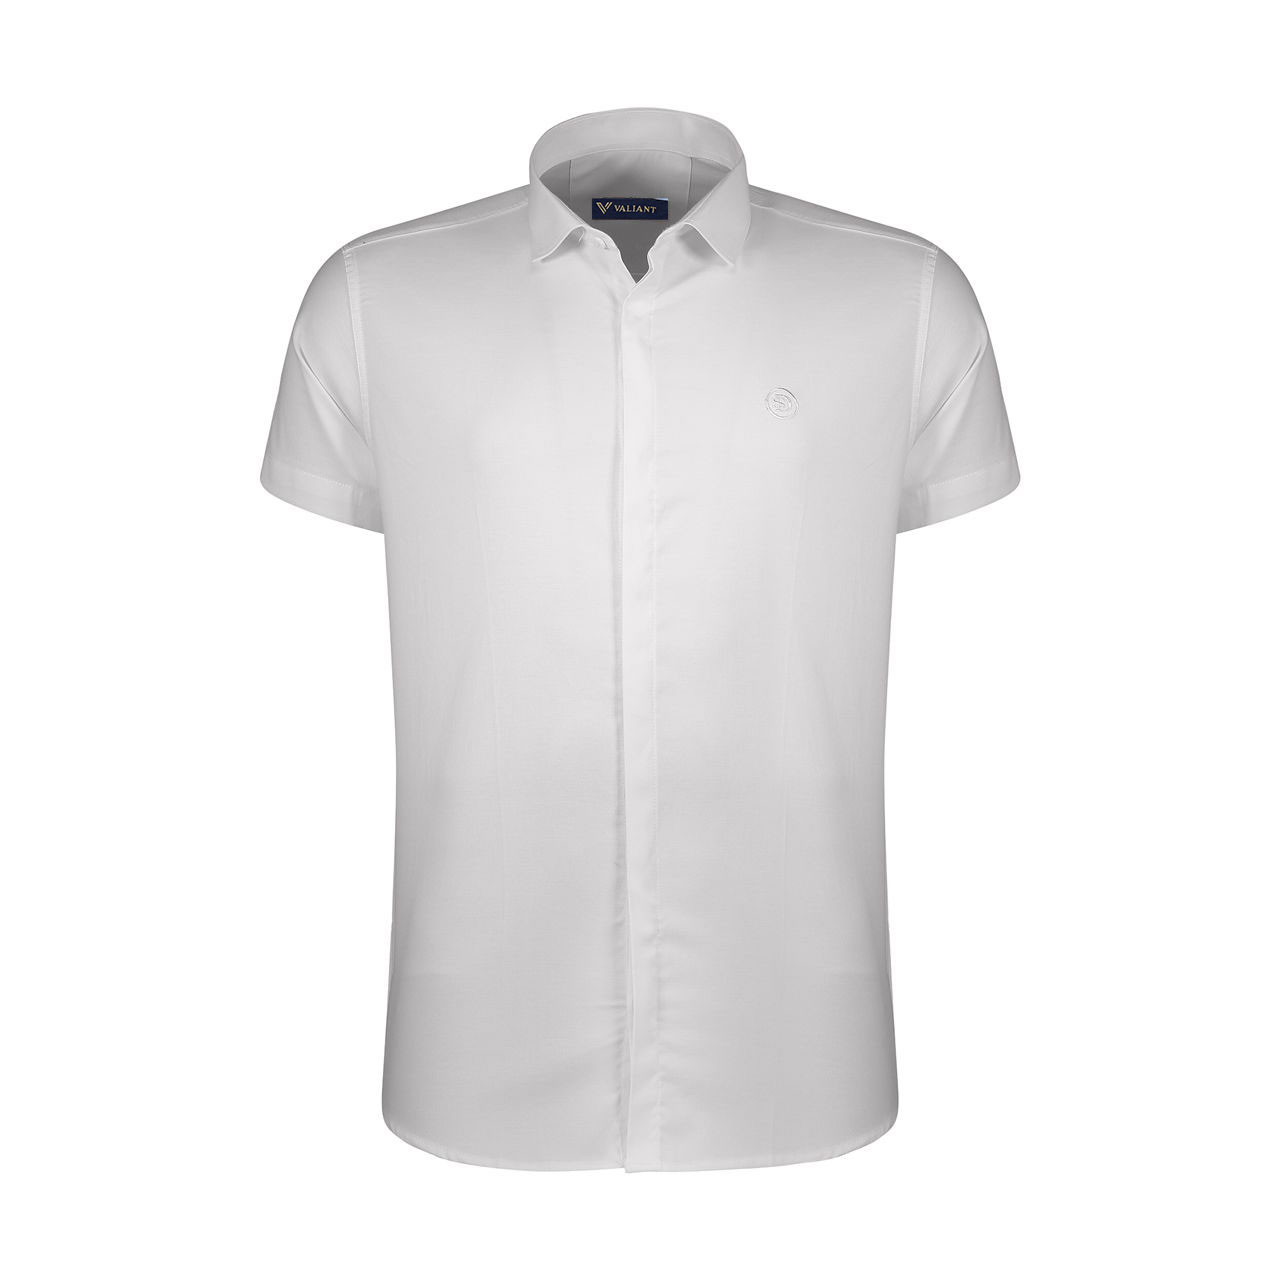 نکته خرید - قیمت روز پیراهن آستین کوتاه مردانه والیانت کد VP018 خرید